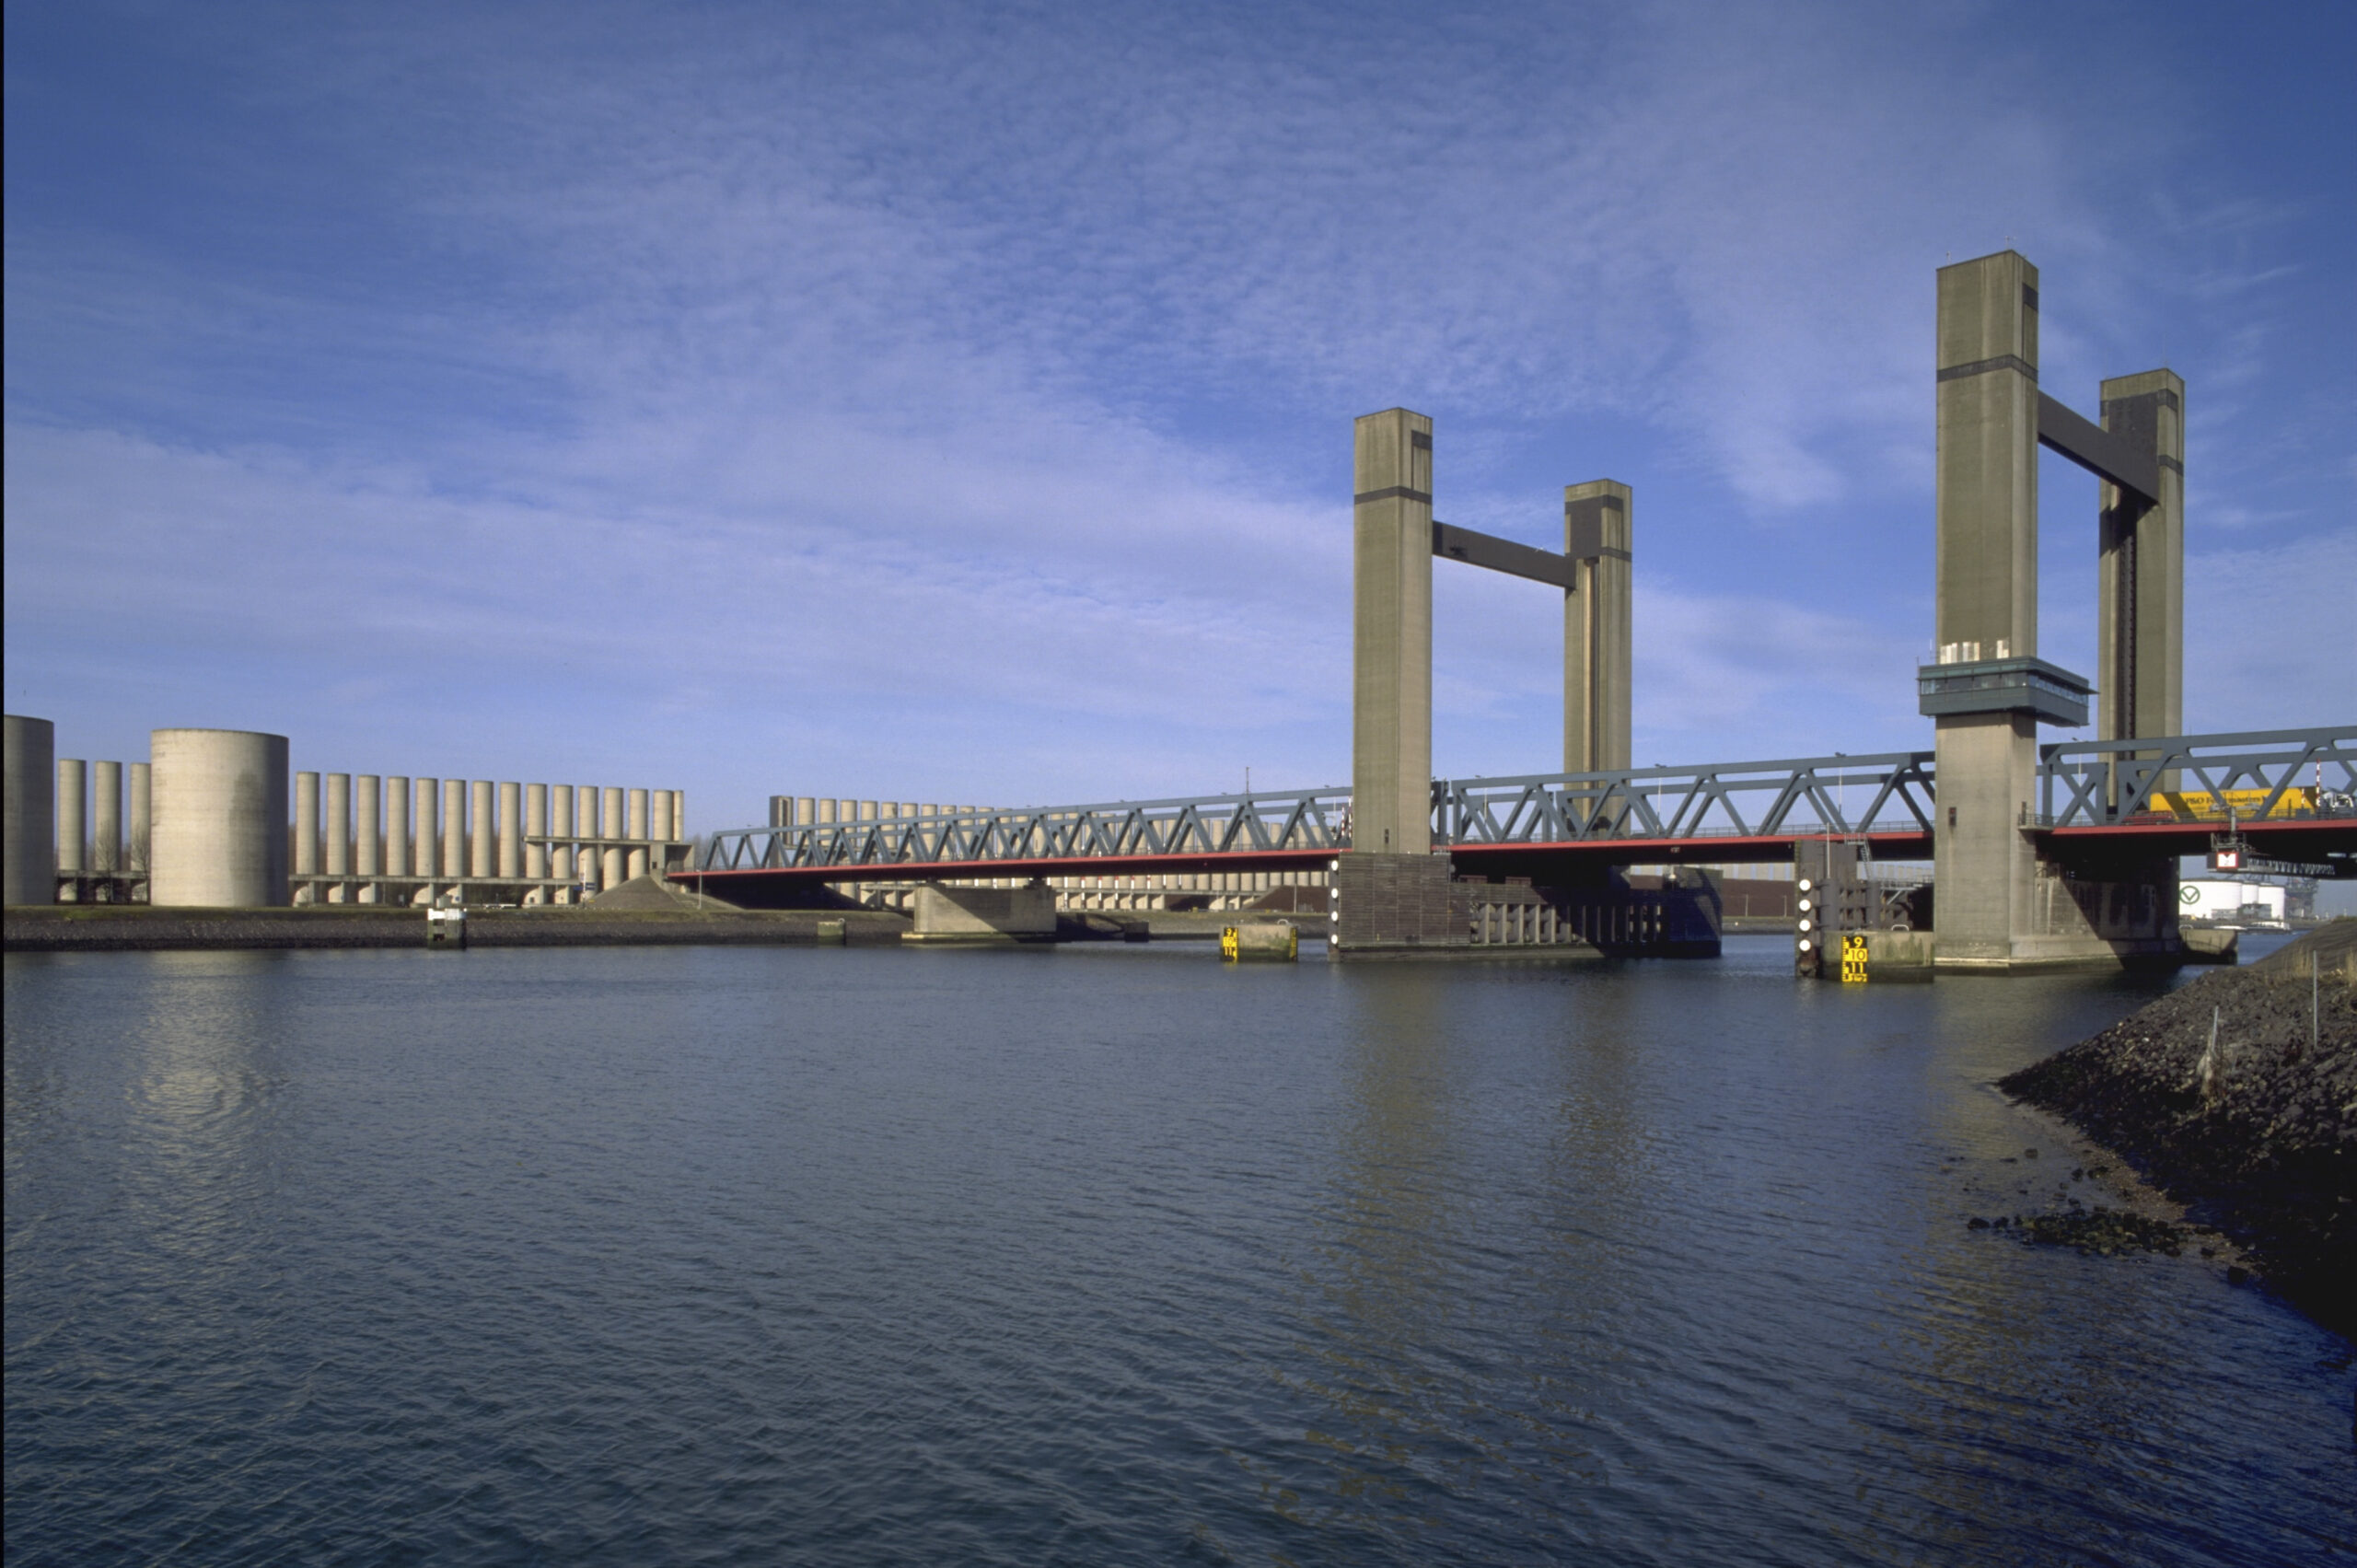 Calandbrug: complexe renovatie op grote hoogte